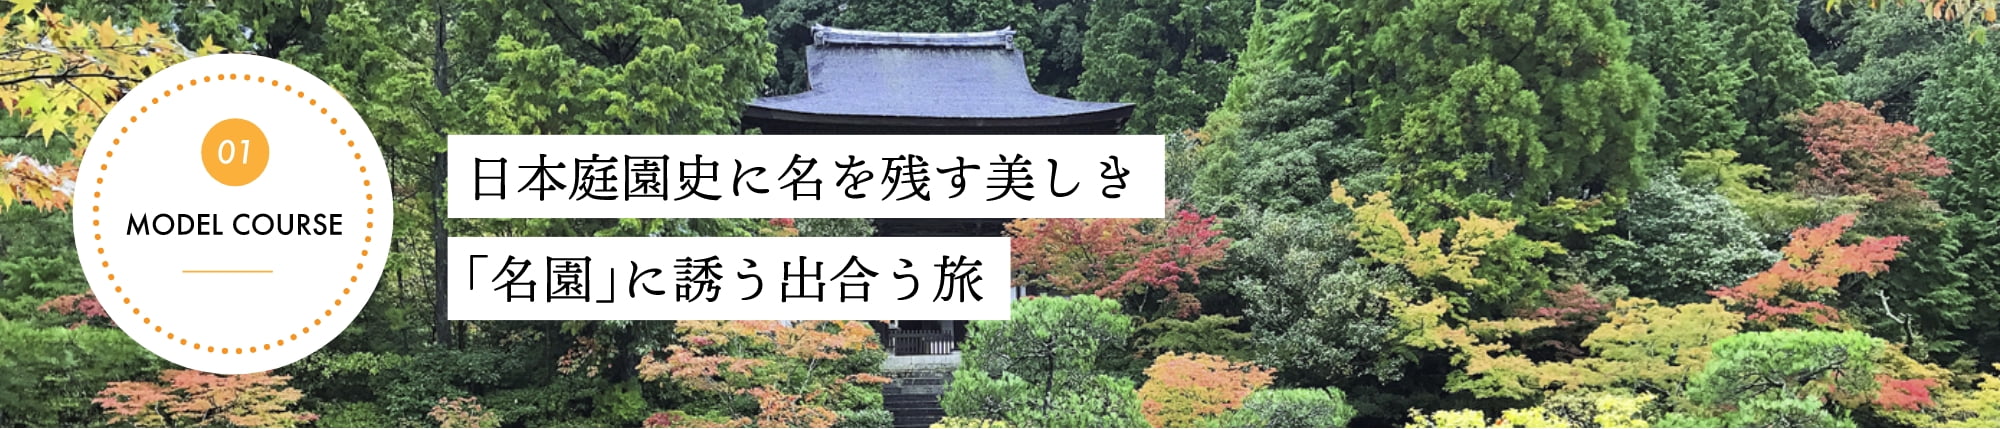 日本庭園史に名を残す美しき「名園」に誘う出会う旅